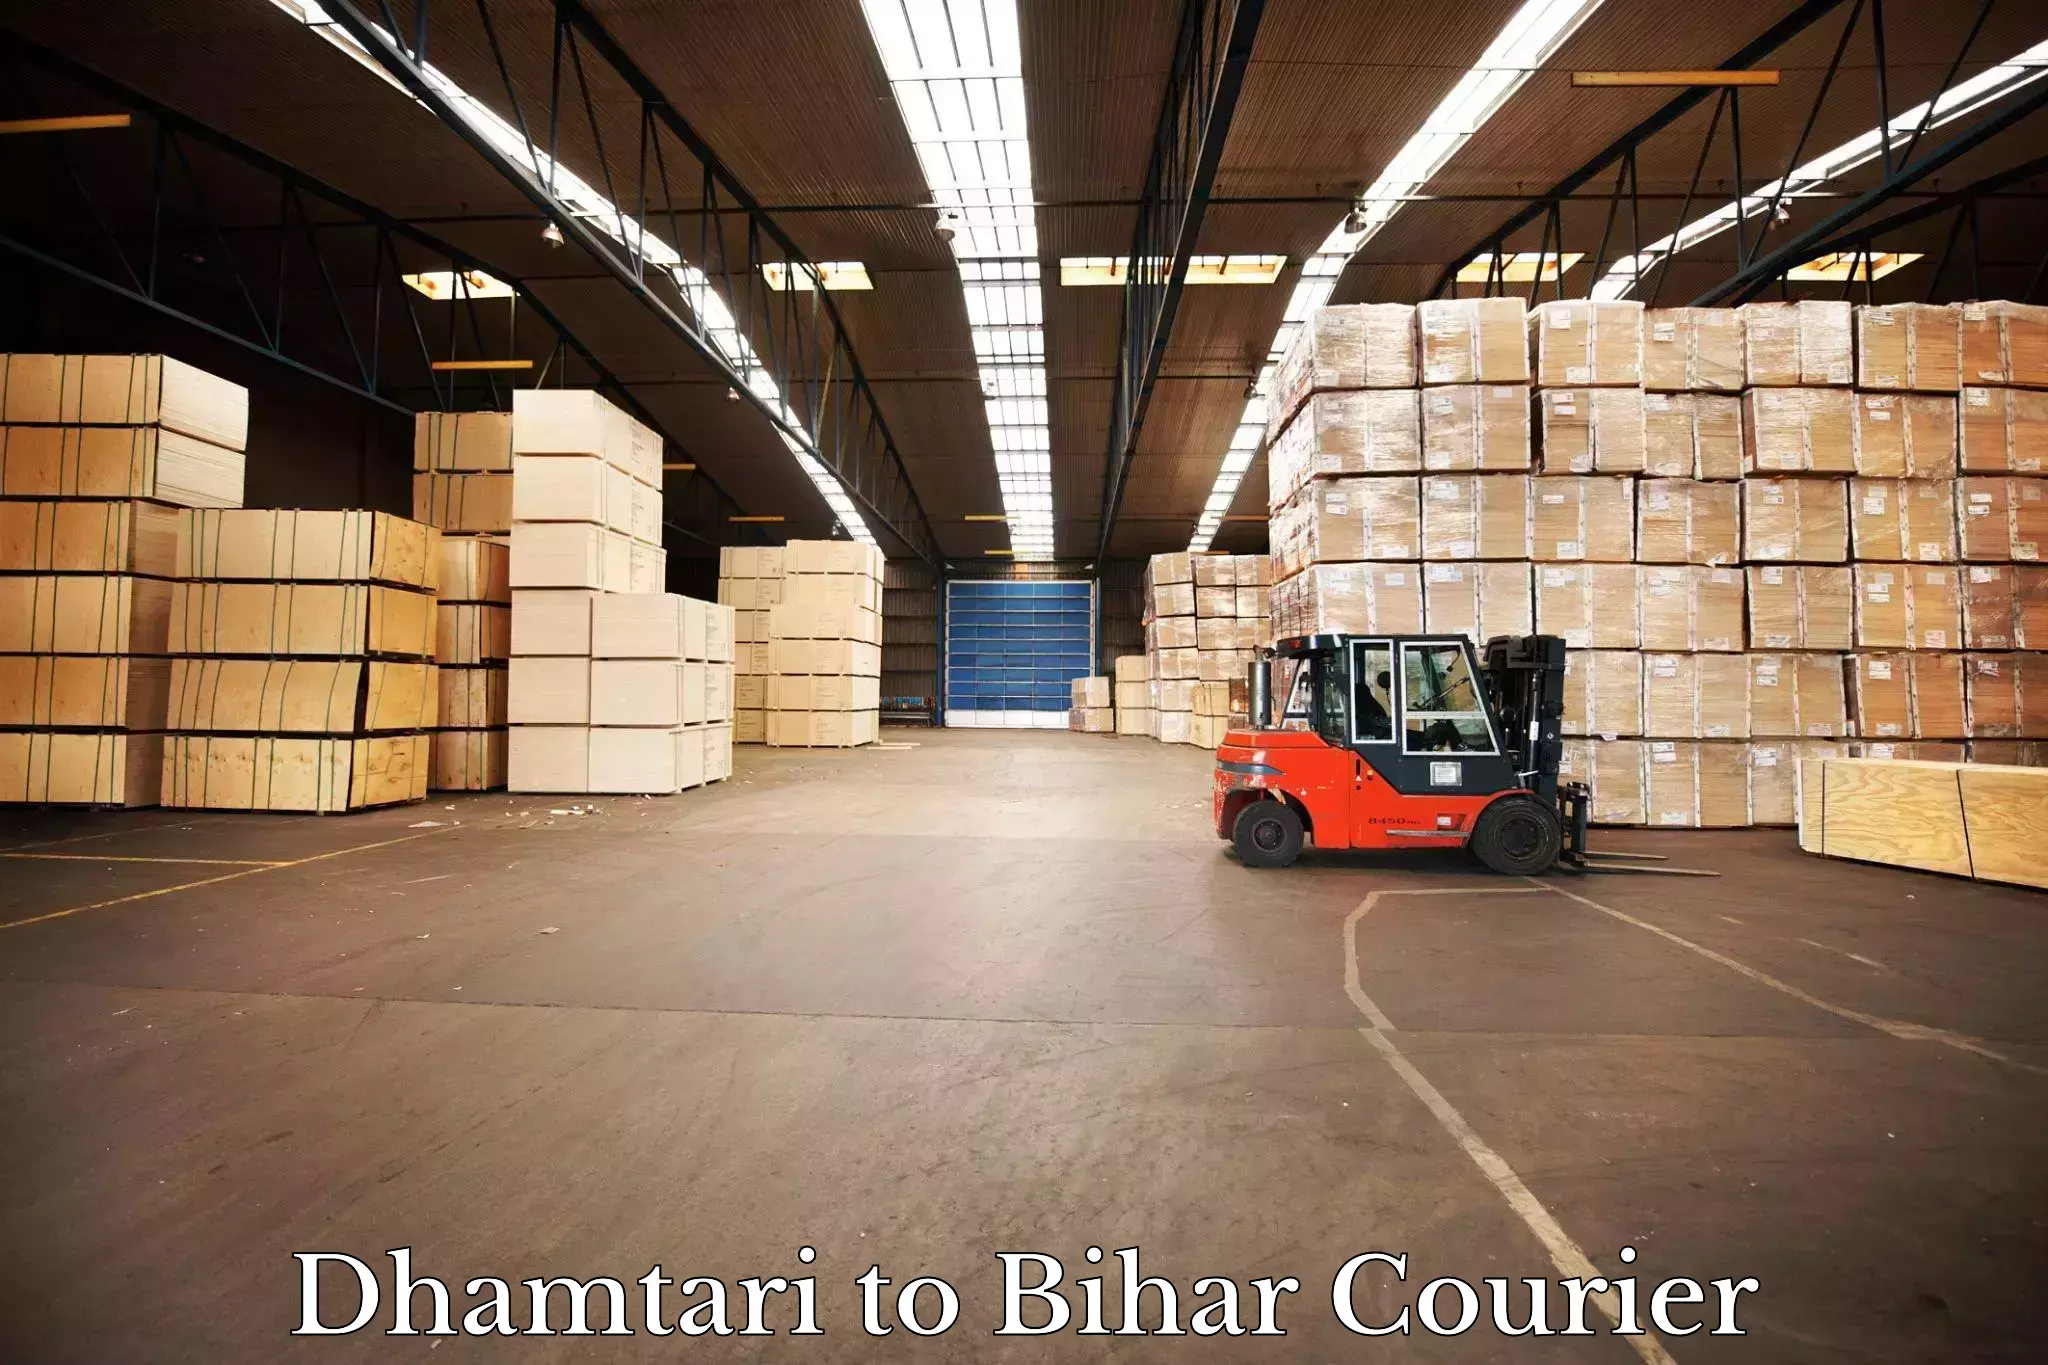 Courier service comparison Dhamtari to Biraul